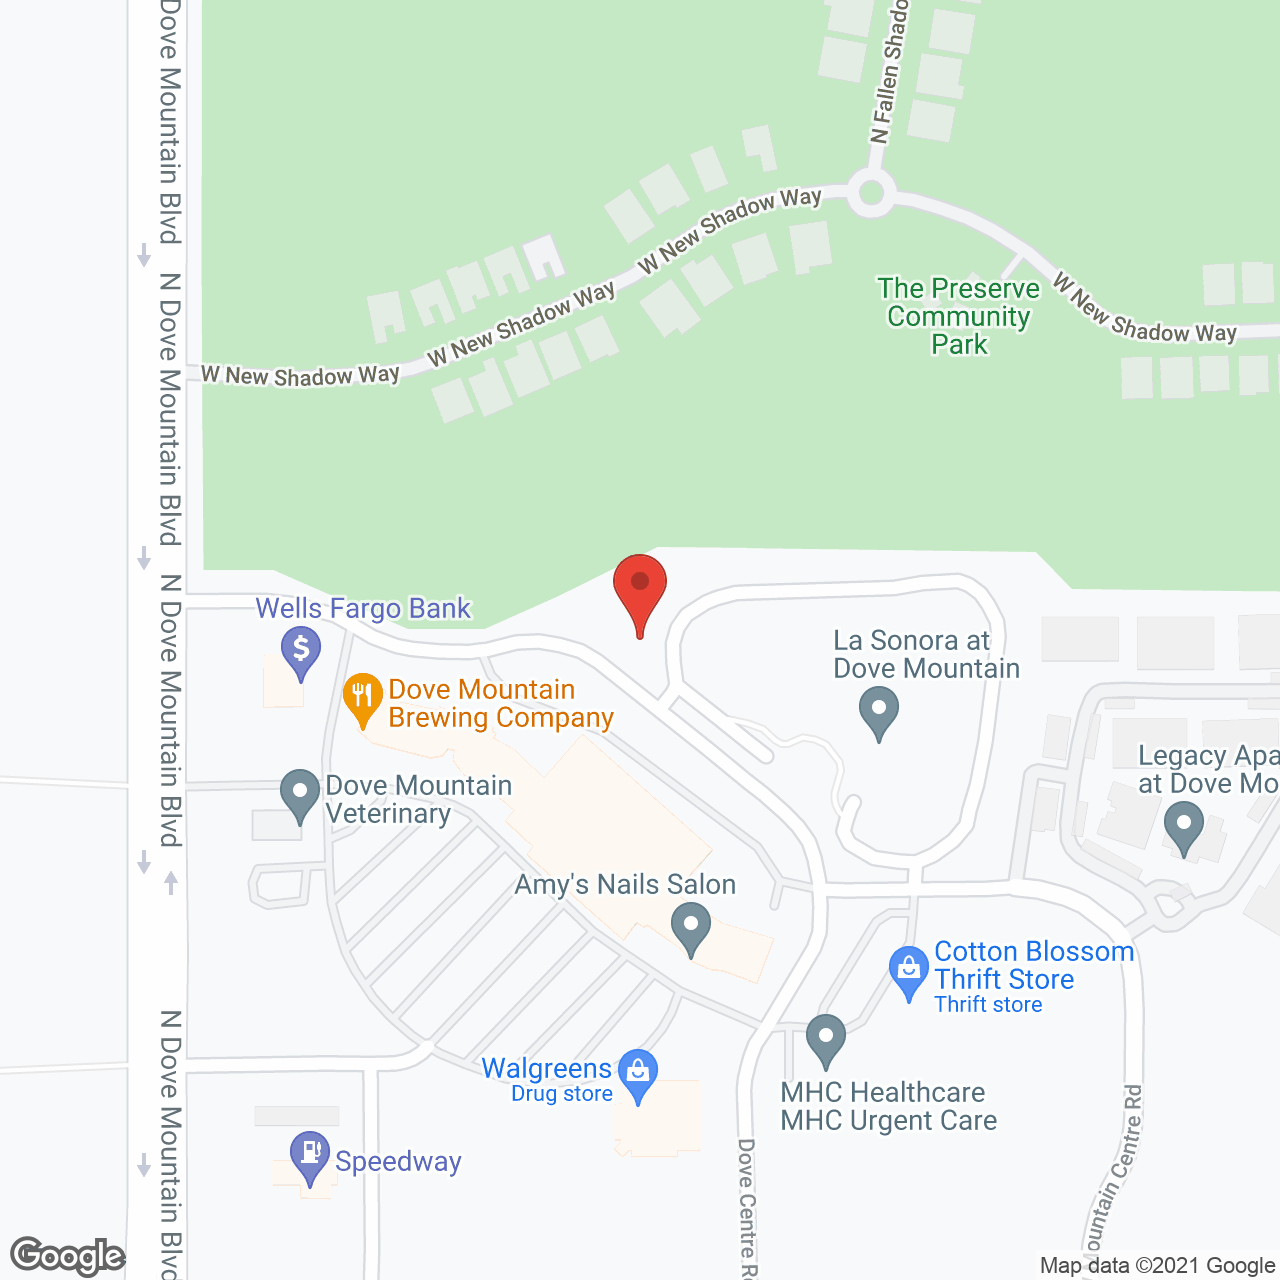 La Sonora at Dove Mountain in google map